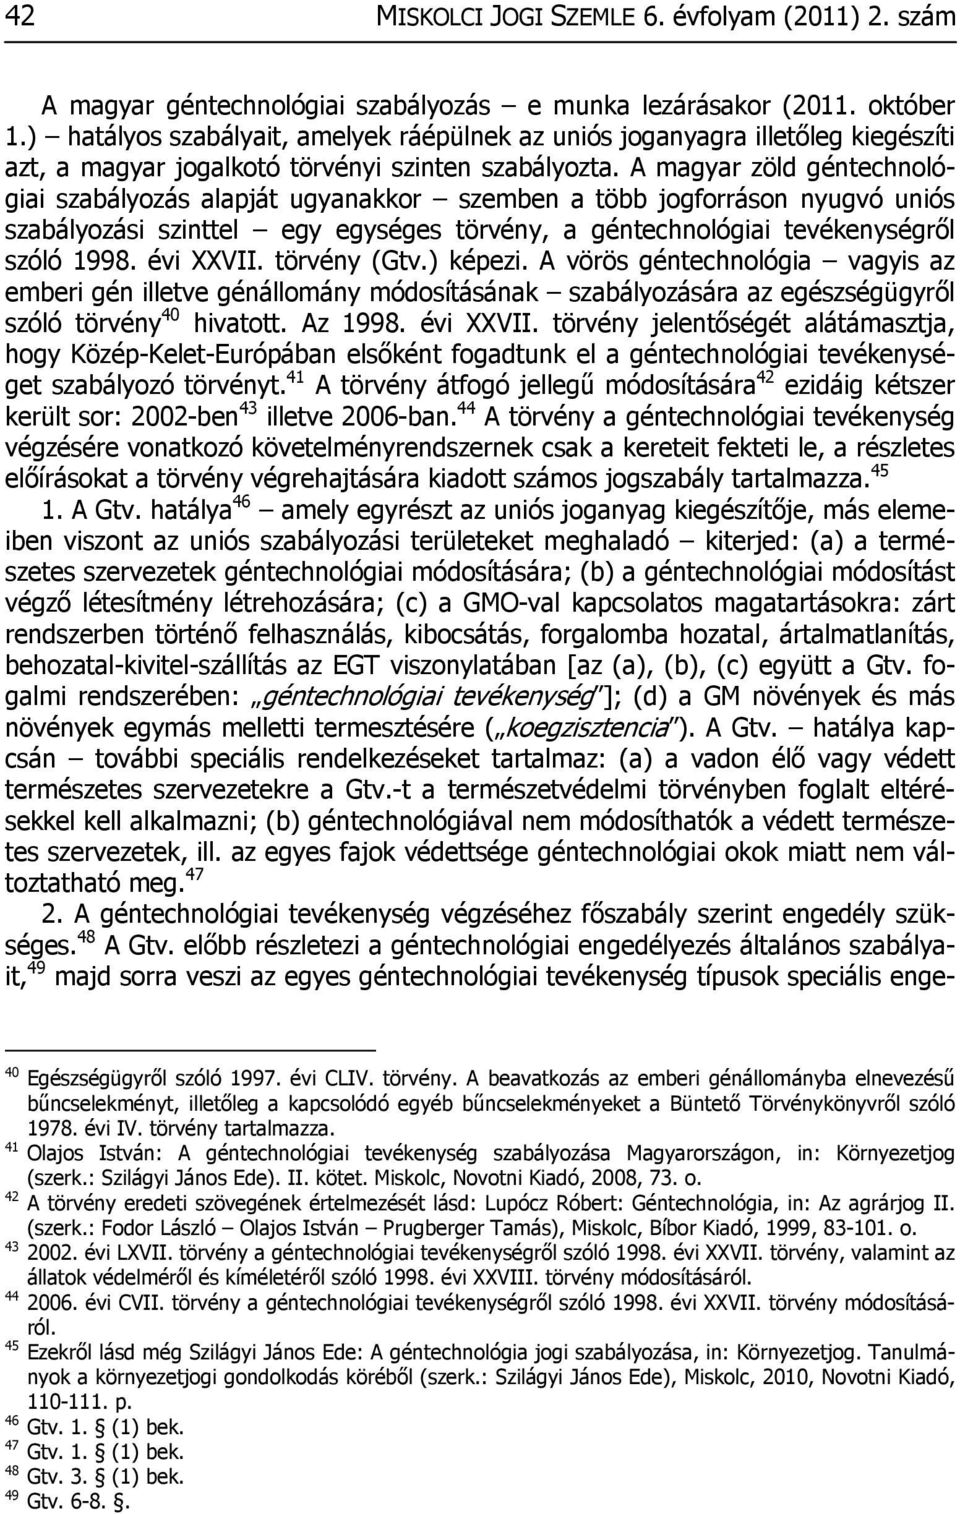 A magyar zöld géntechnológiai szabályozás alapját ugyanakkor szemben a több jogforráson nyugvó uniós szabályozási szinttel egy egységes törvény, a géntechnológiai tevékenységről szóló 1998. évi XXVII.